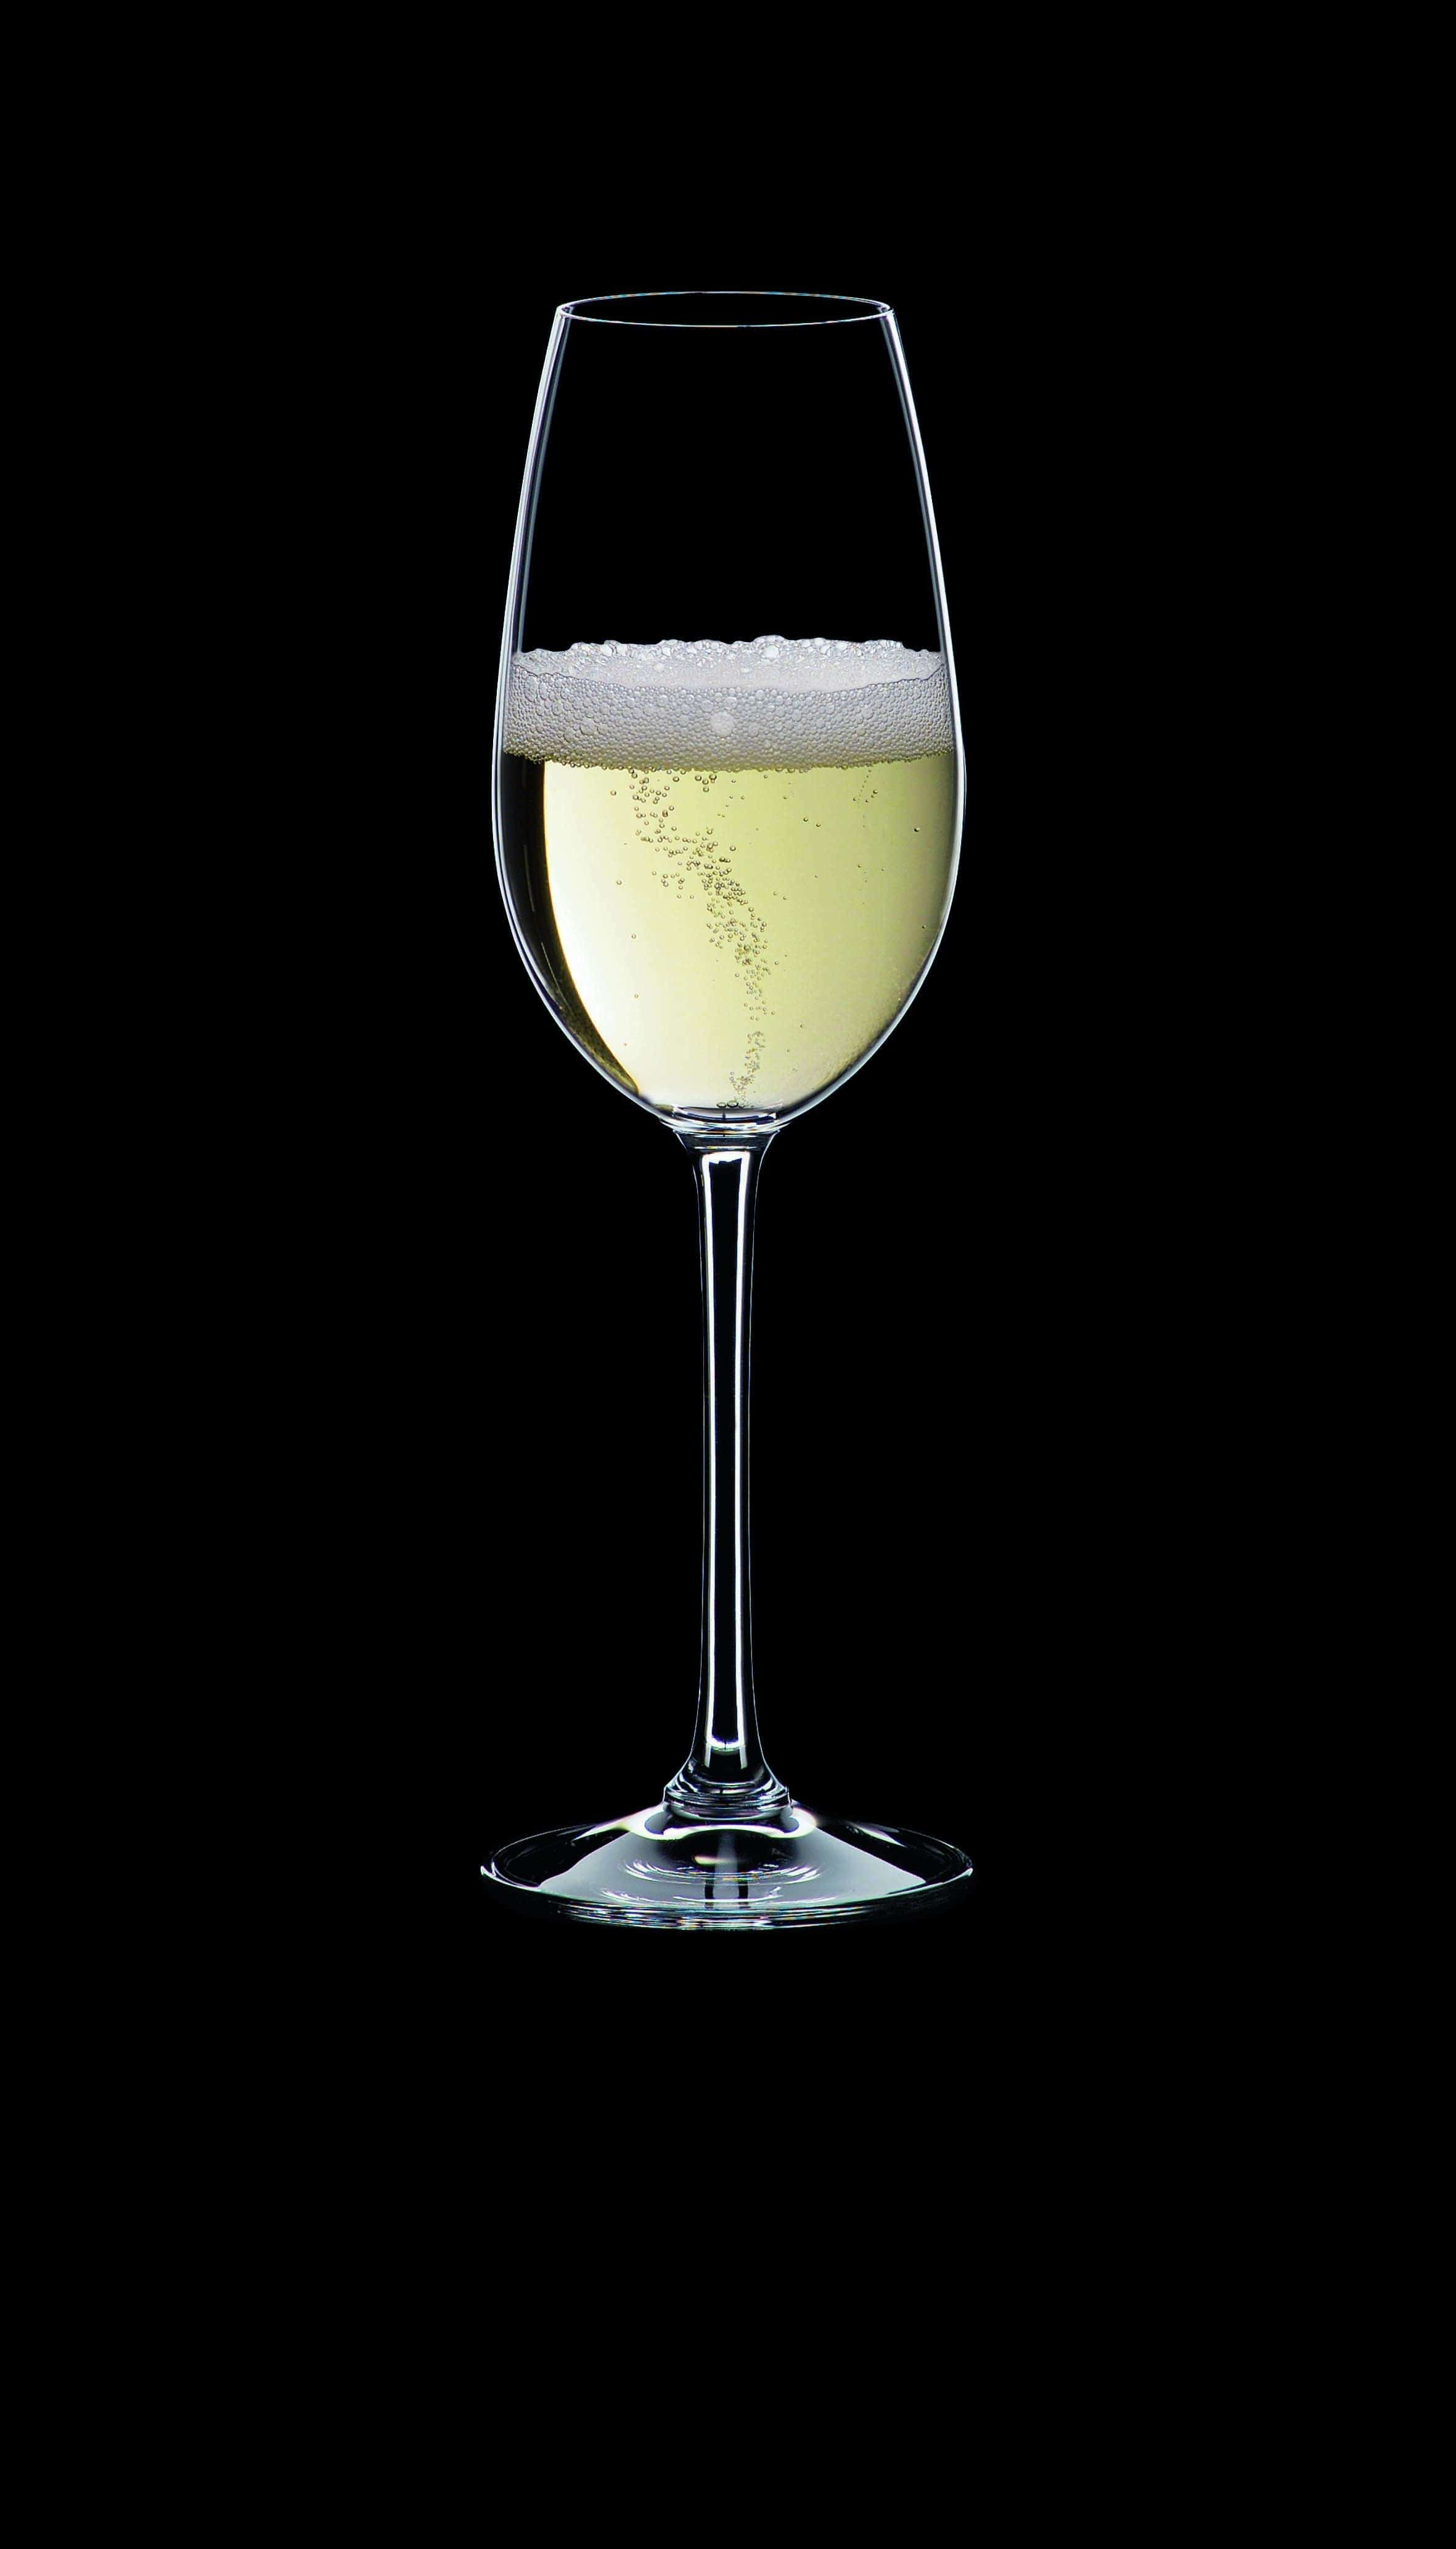 Nachtmann VI Vino Champagne Glass 260 ml, zestaw 4